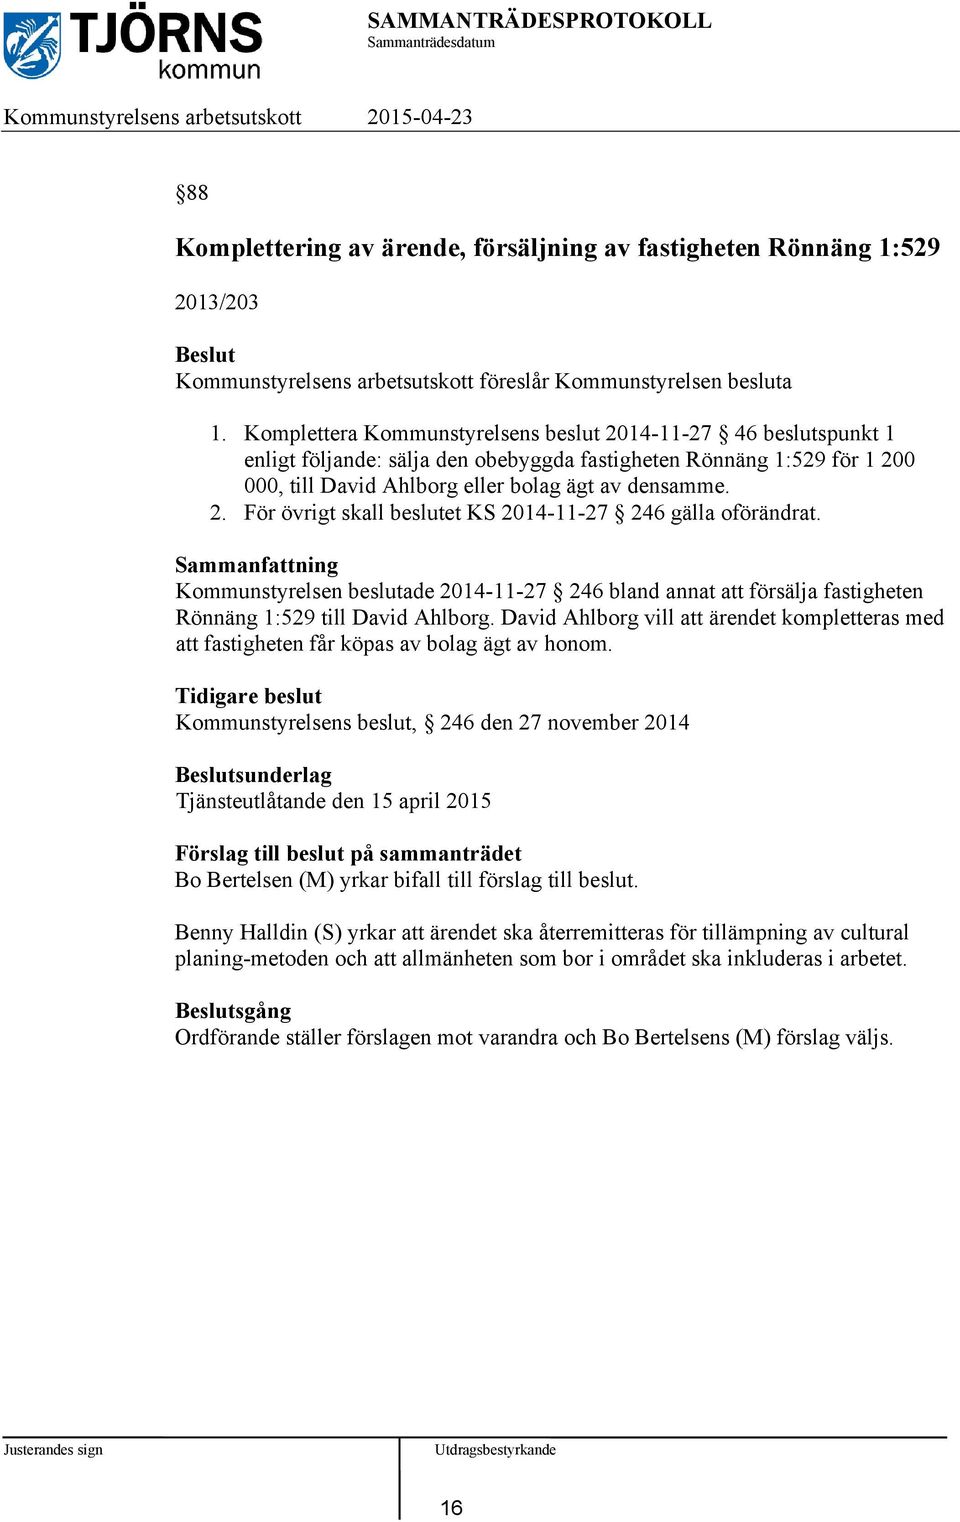 Kommunstyrelsen beslutade 2014-11-27 246 bland annat att försälja fastigheten Rönnäng 1:529 till David Ahlborg.